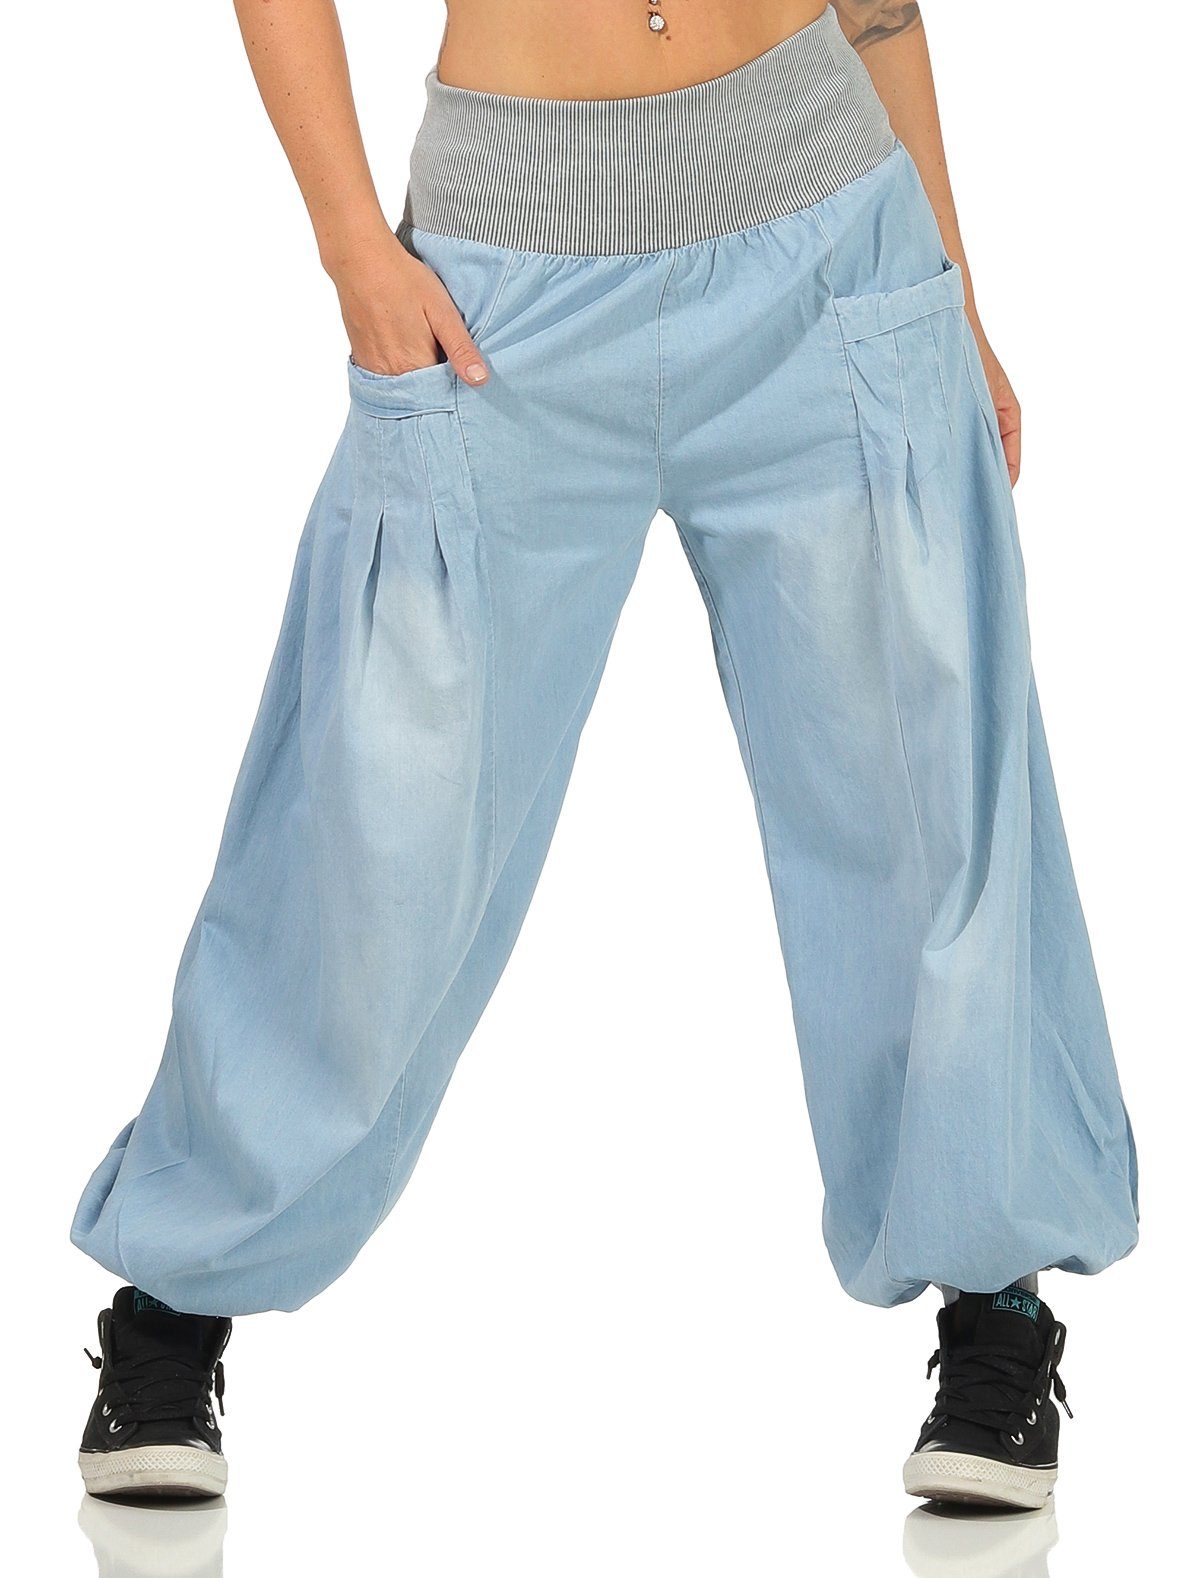 malito more than fashion Haremshose »6258« Goa Hose in Denim Jeans Optik  mit breitem Bund und Eingrifftaschen Einheitsgröße online kaufen | OTTO